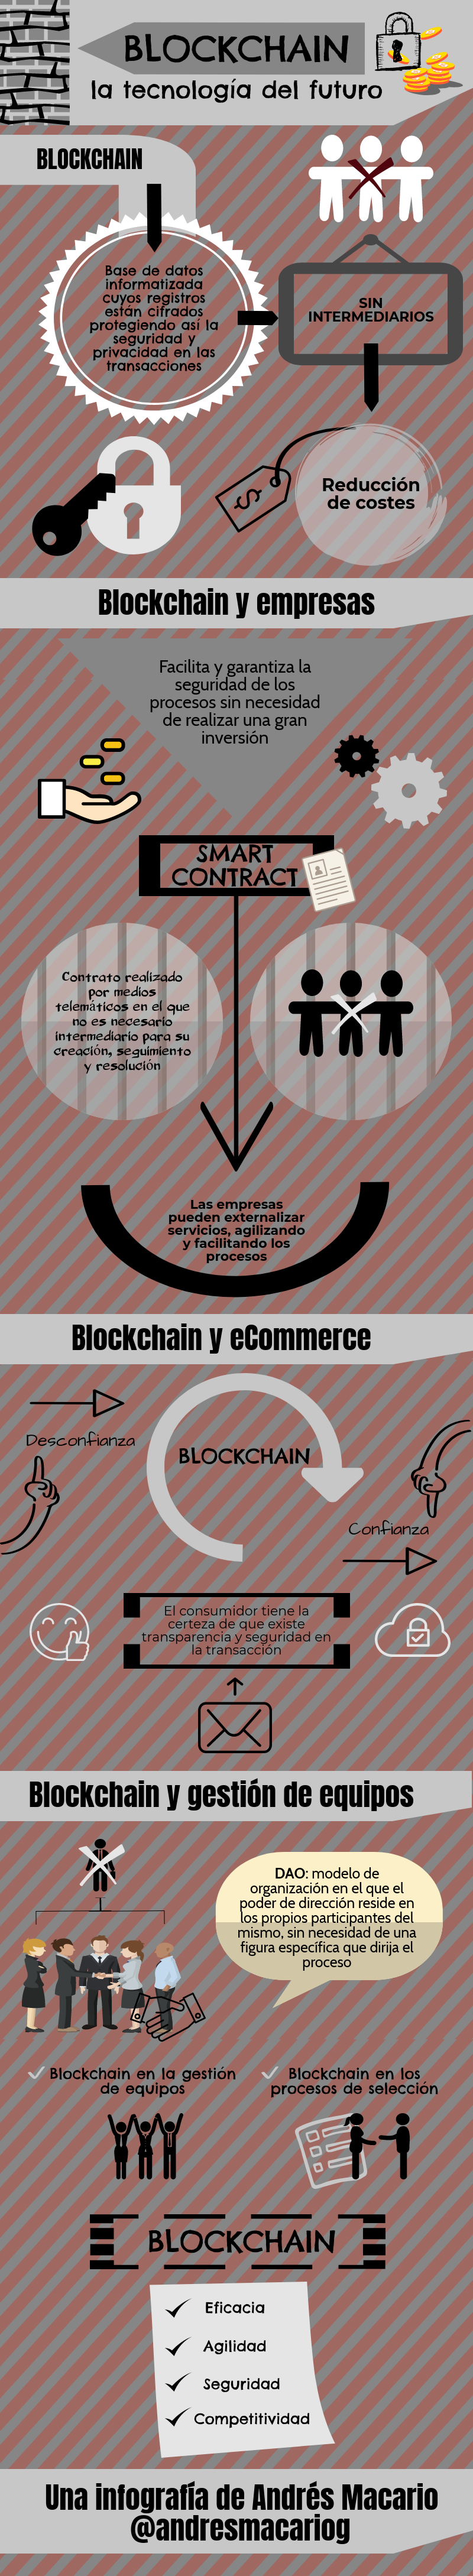 Blockchain, tecnología del futuro - Infografía